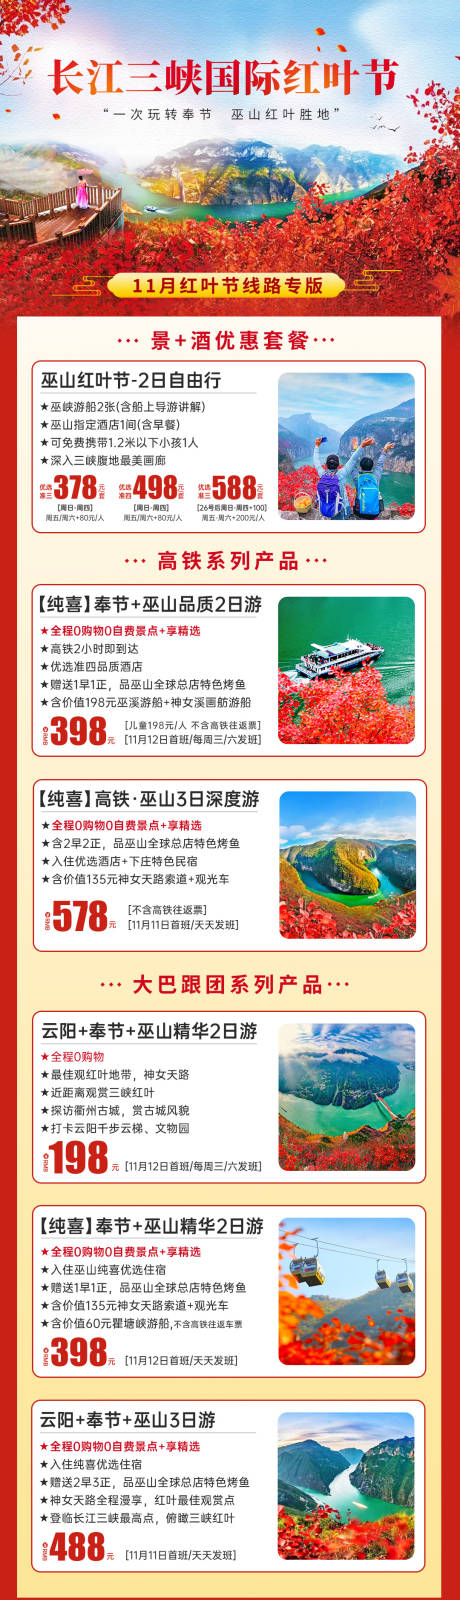 三峡红叶节旅游海报